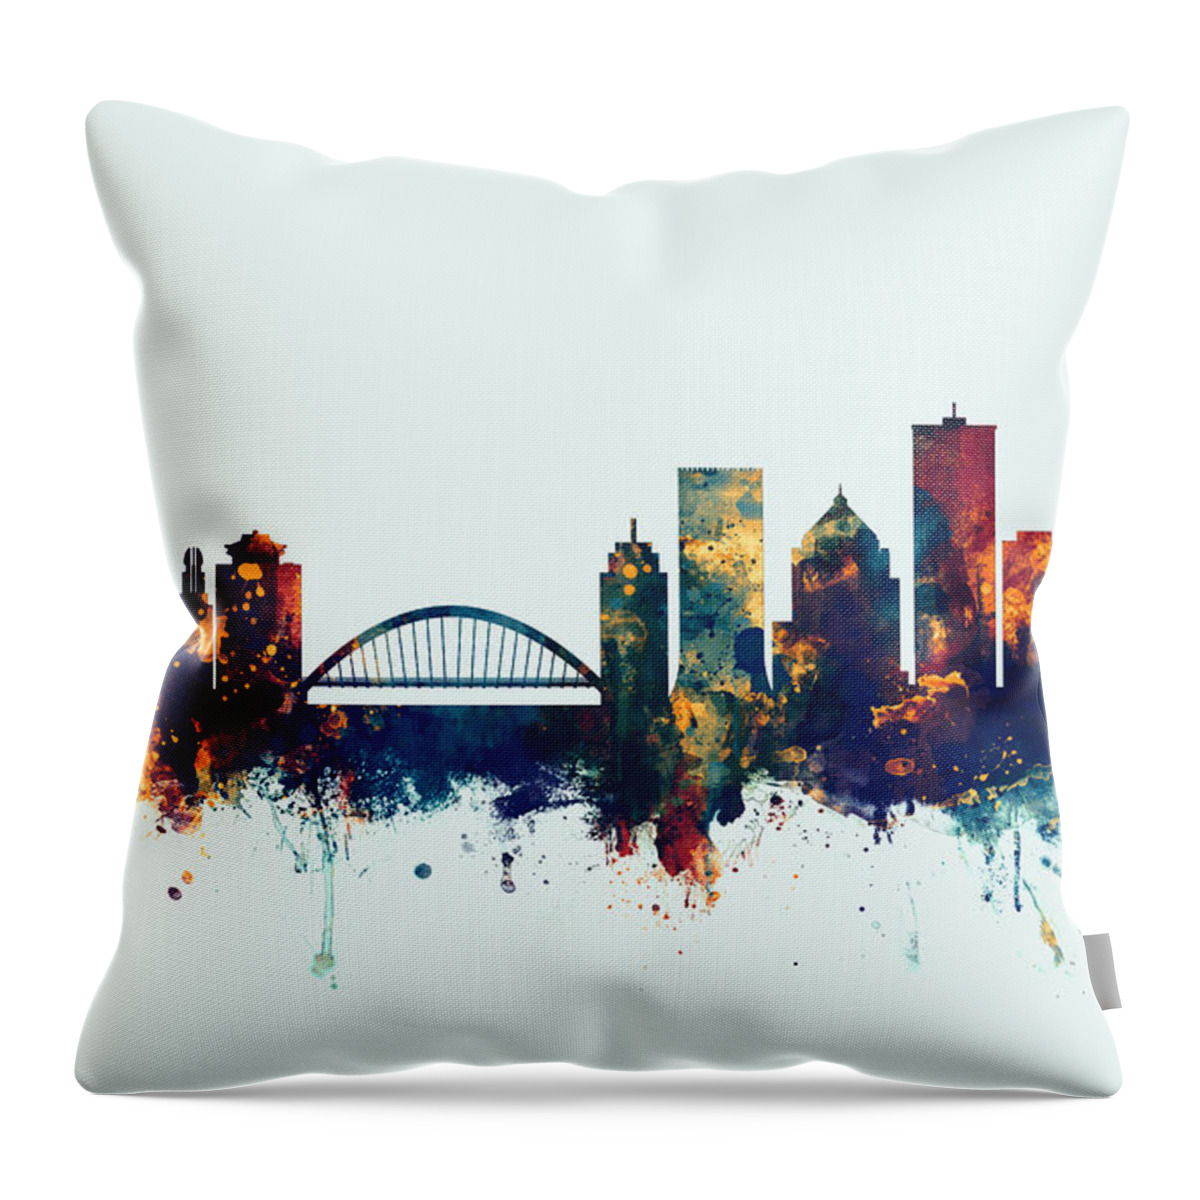 Rochester Throw Pillow featuring the digital art Rochester New York Skyline by Michael Tompsett